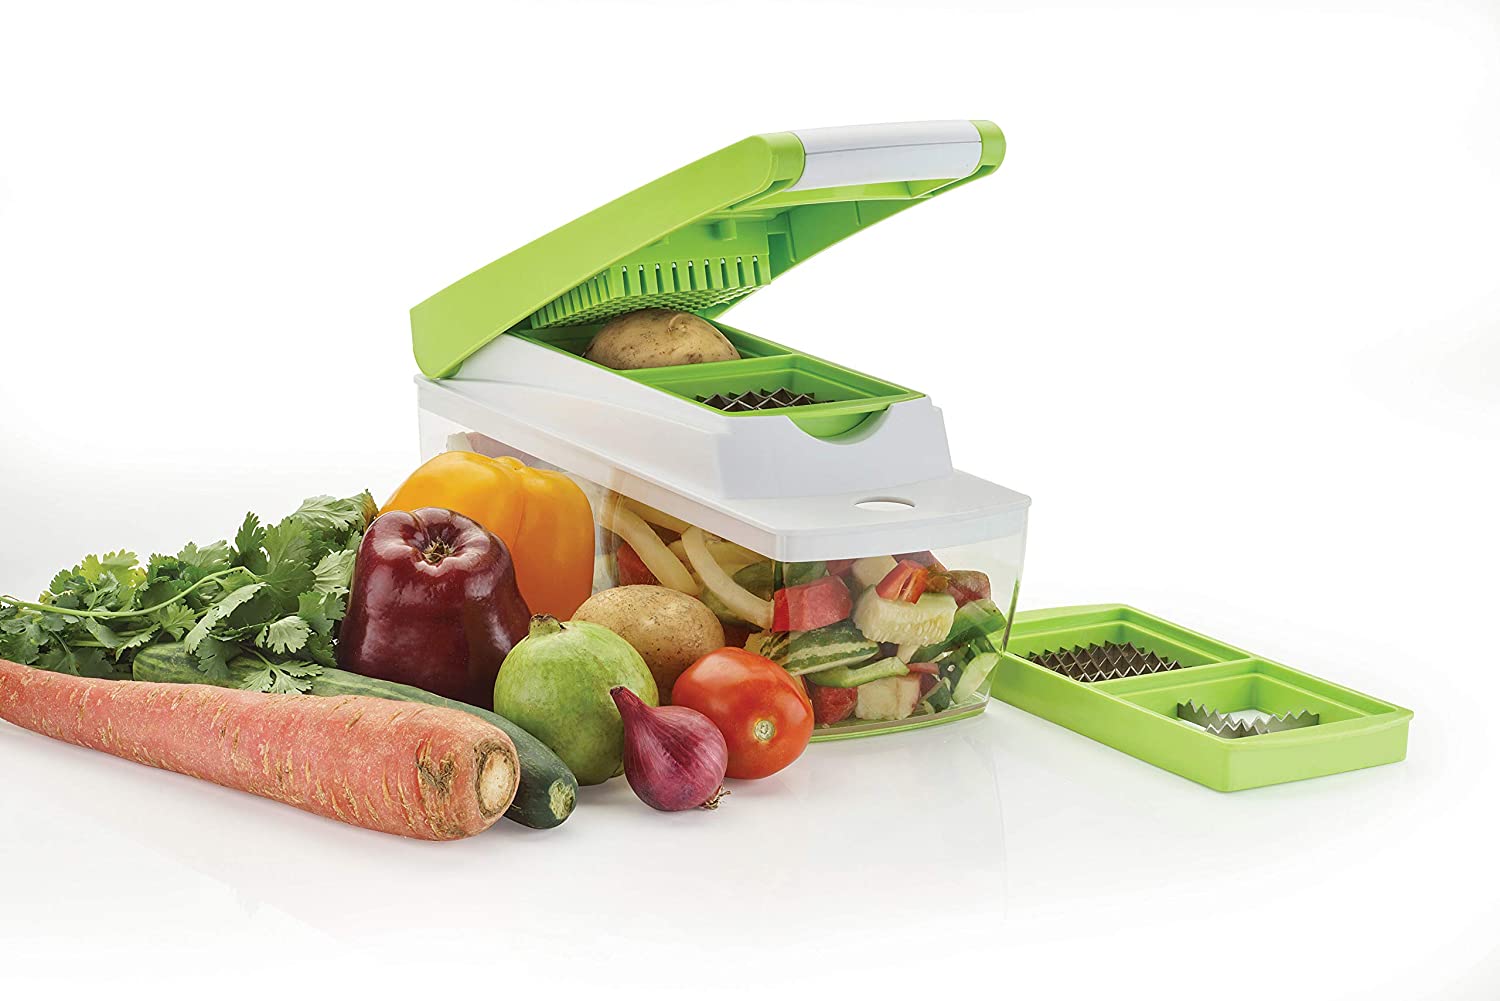 Plastic Multipurpose Vegetable and Fruit Chopper Cutter Grater Slicer, Green2